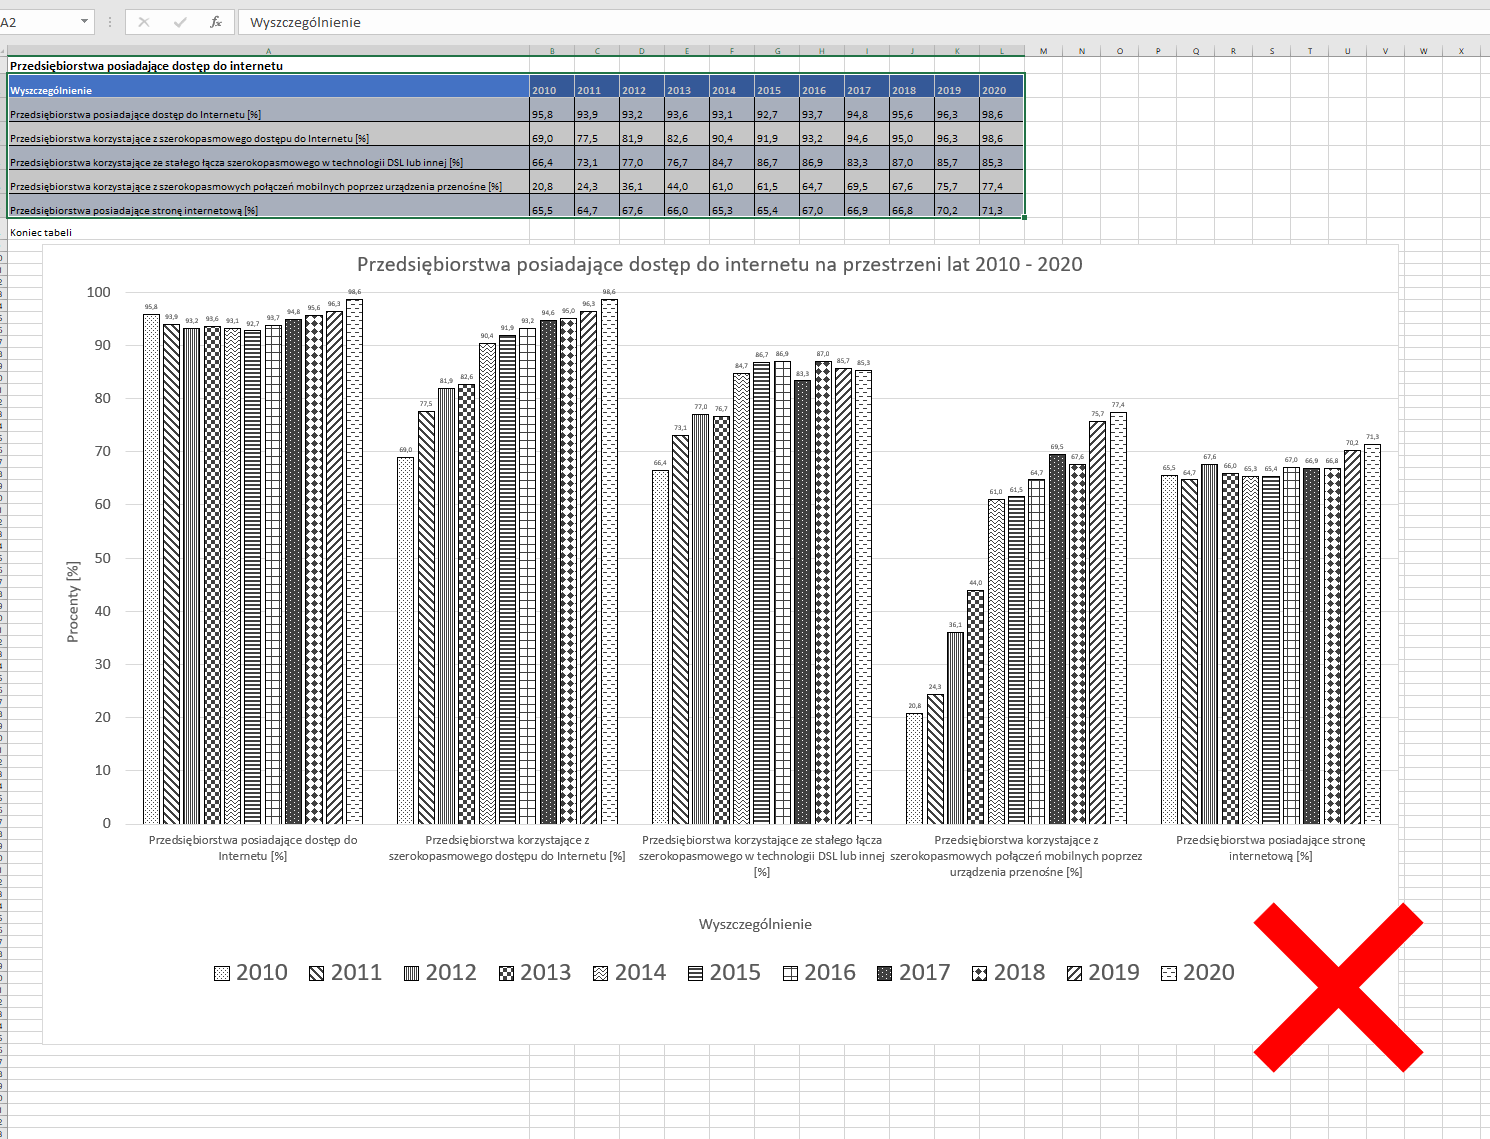 Zrzut ekranu z programu Ms Excel - wykres nieczytelny, zawierający zbyt dużą ilość danych